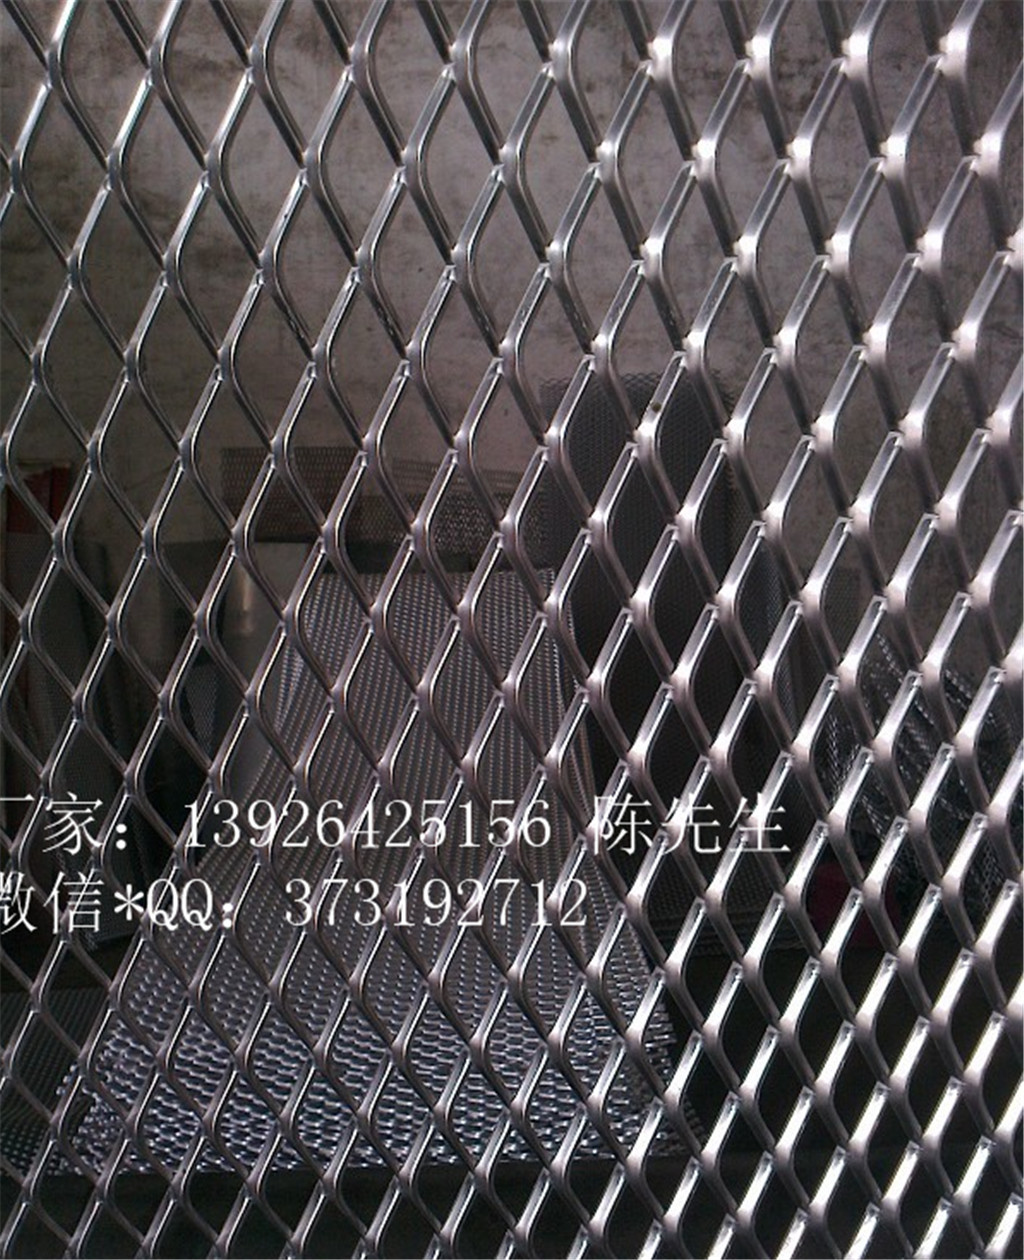 菱形网孔板 铝材网板 金属装修装饰网板图片